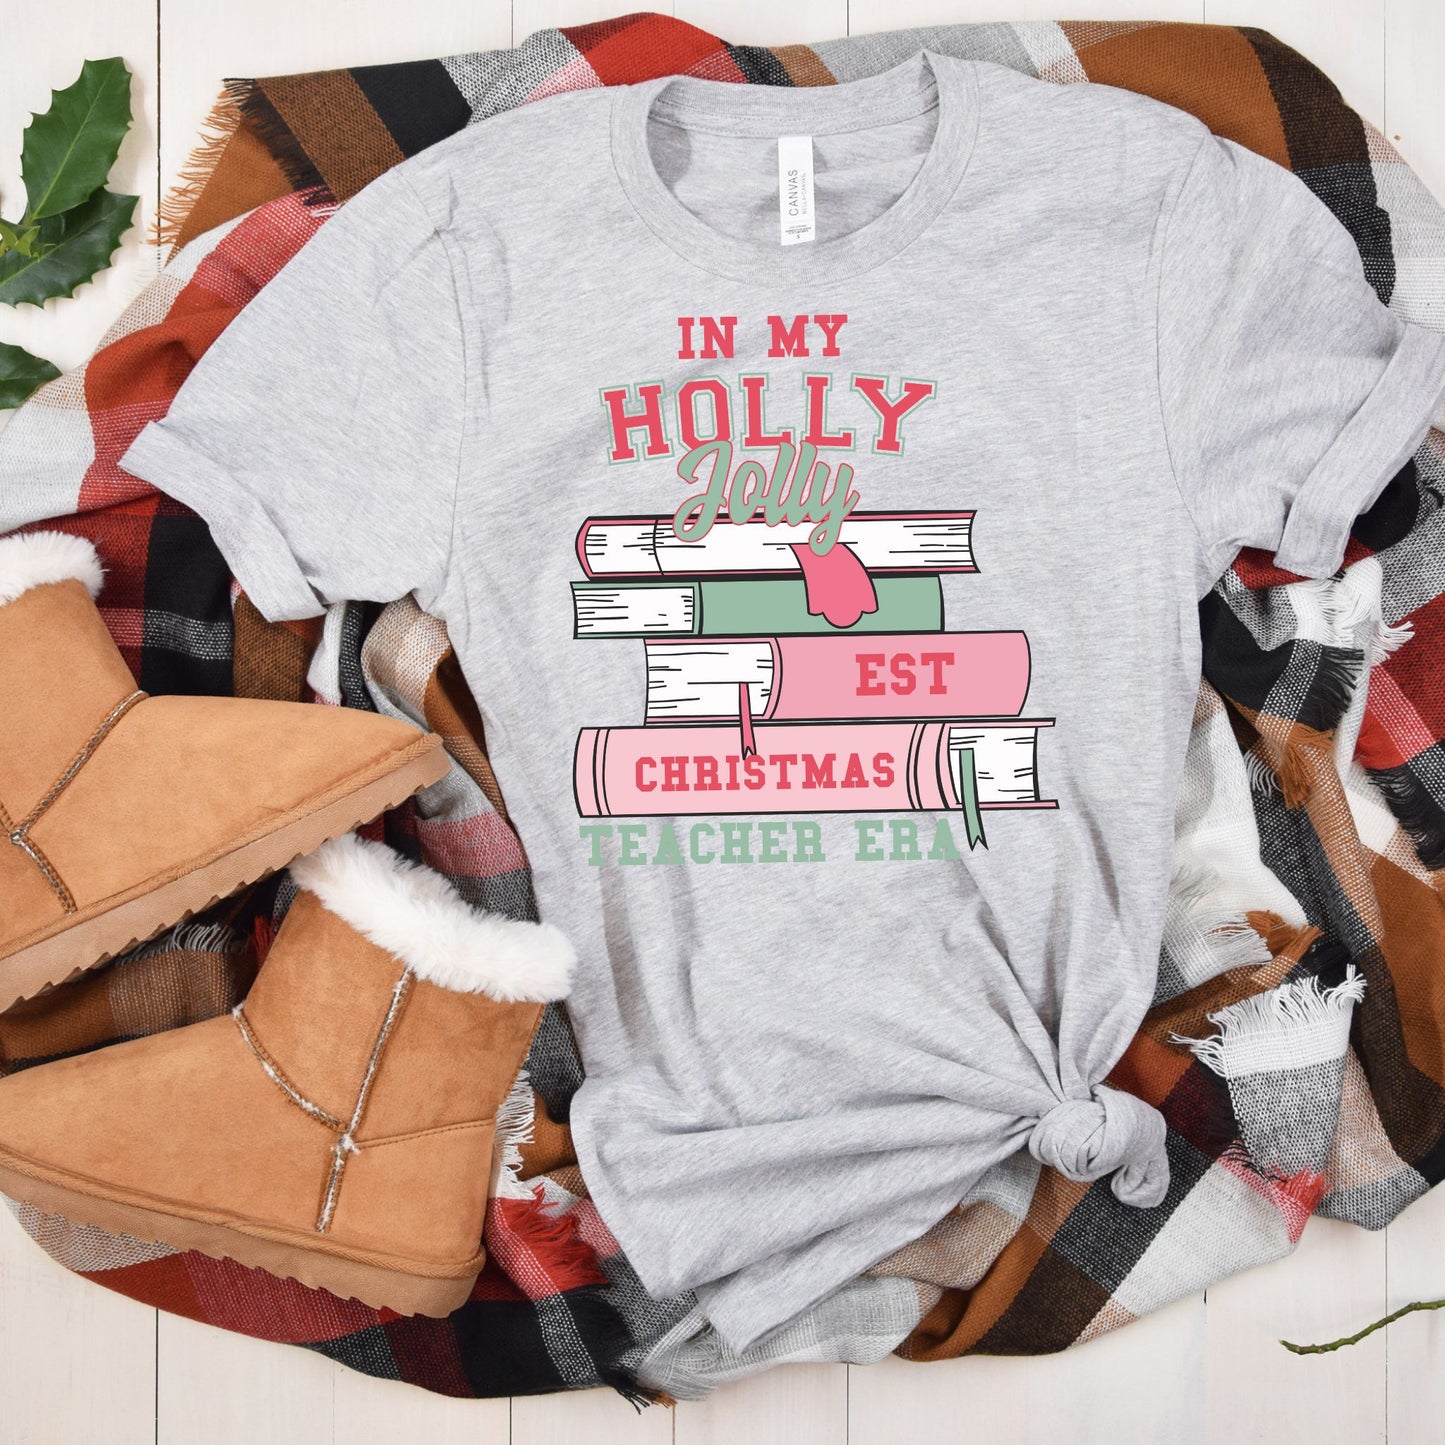 Holly Jolly EST Christmas Teacher Era Tee